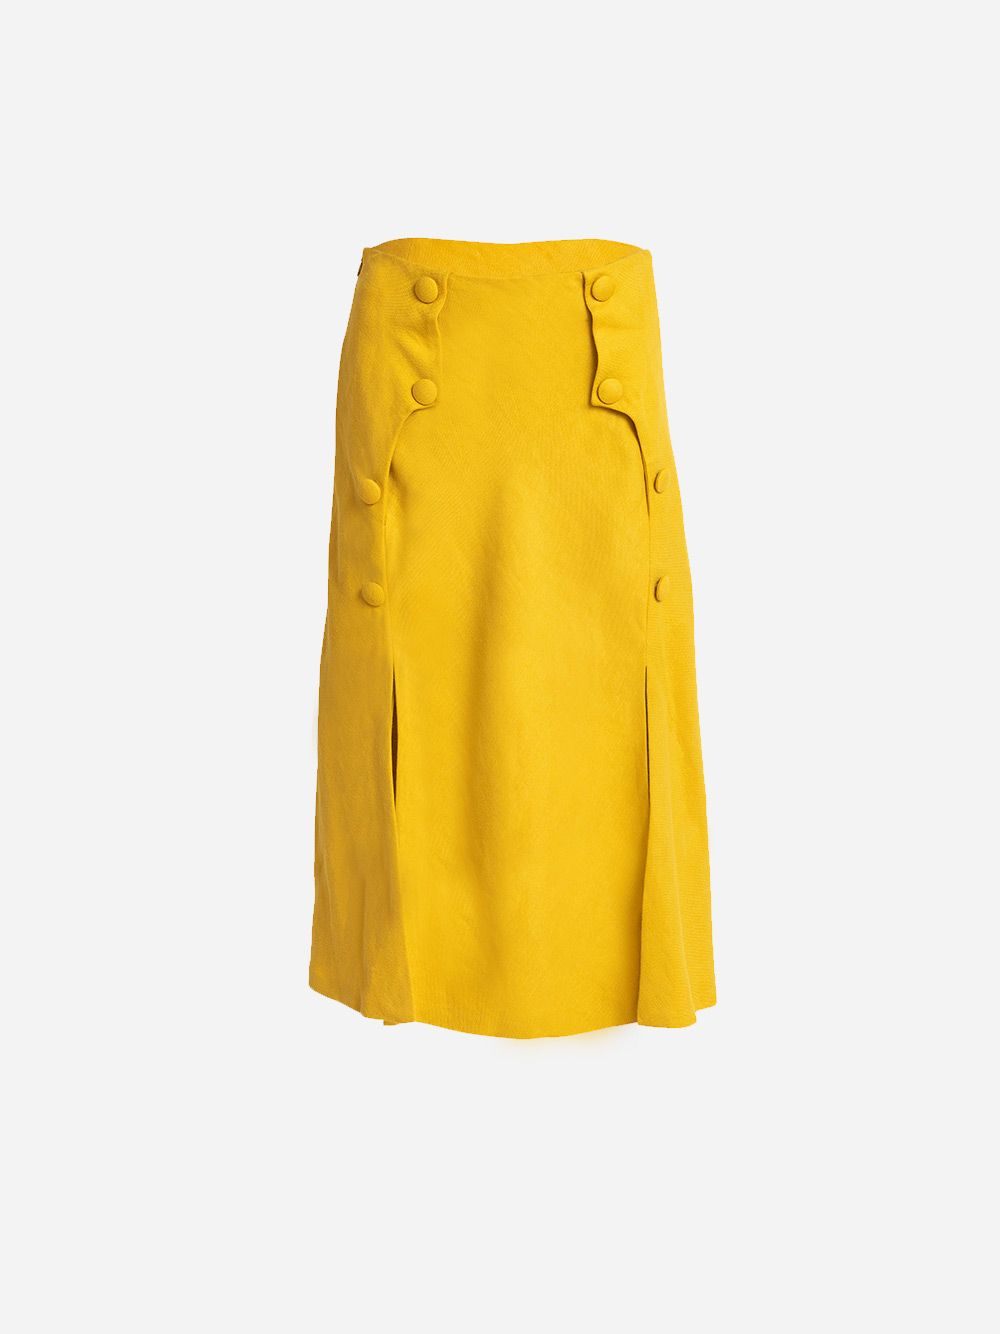 Yellow Girassol Skirt | Carolina Machado 